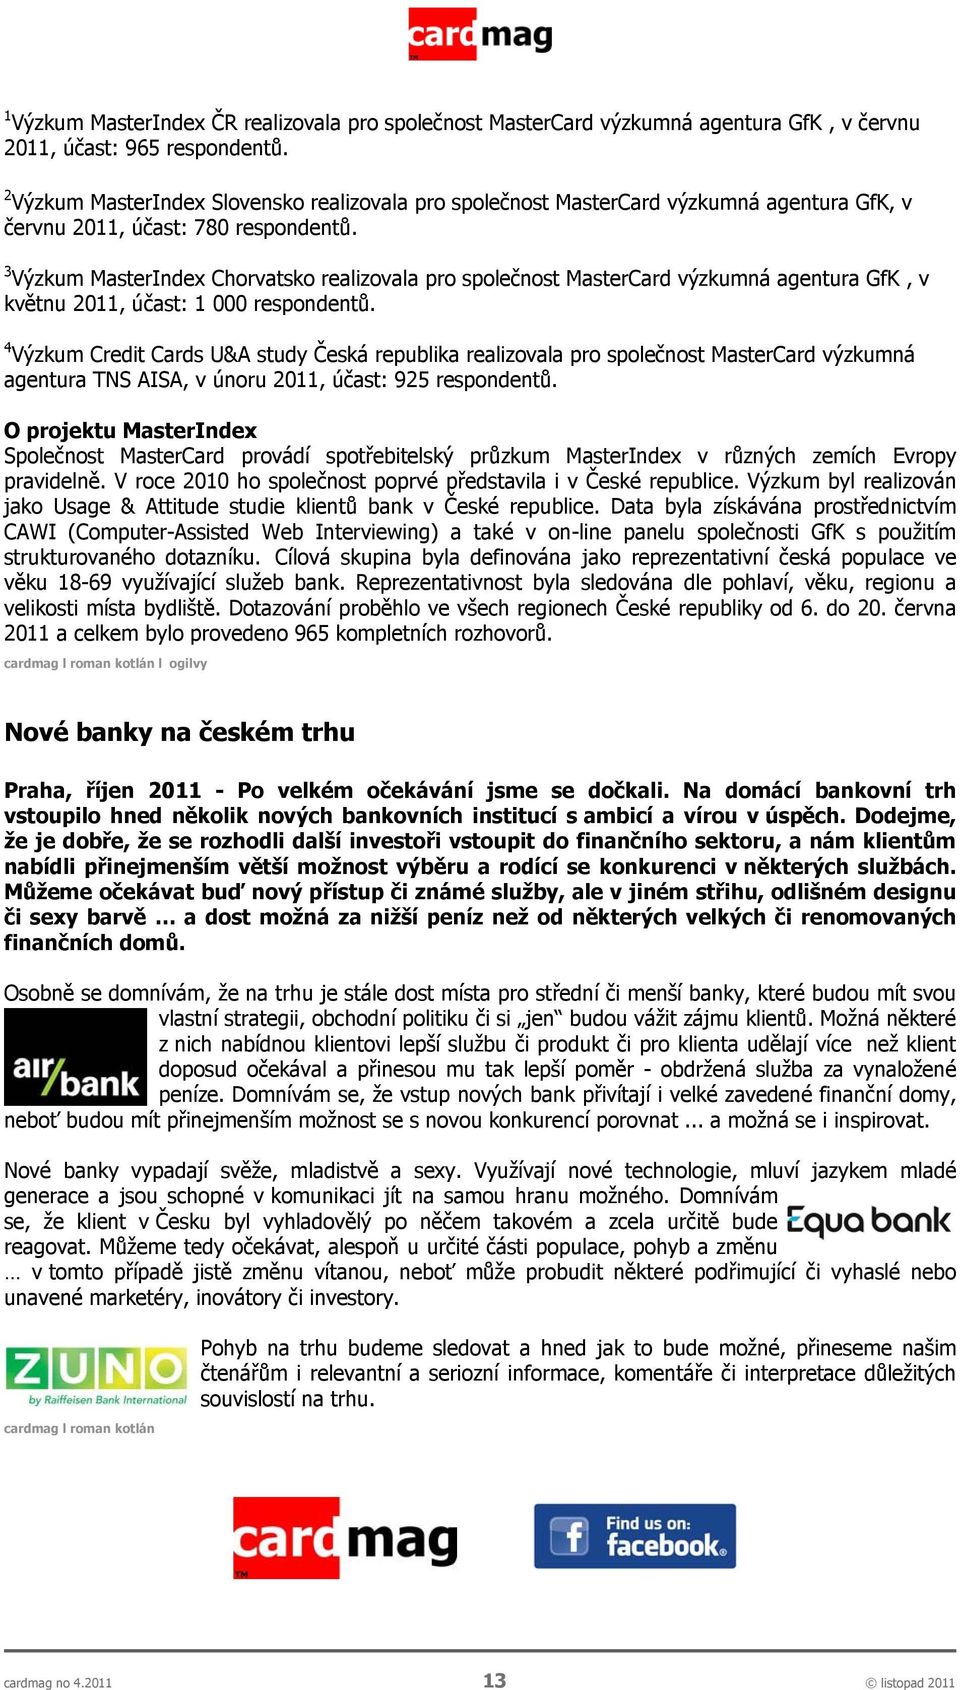 3 Výzkum MasterIndex Chorvatsko realizovala pro společnost MasterCard výzkumná agentura GfK, v květnu 2011, účast: 1 000 respondentů.